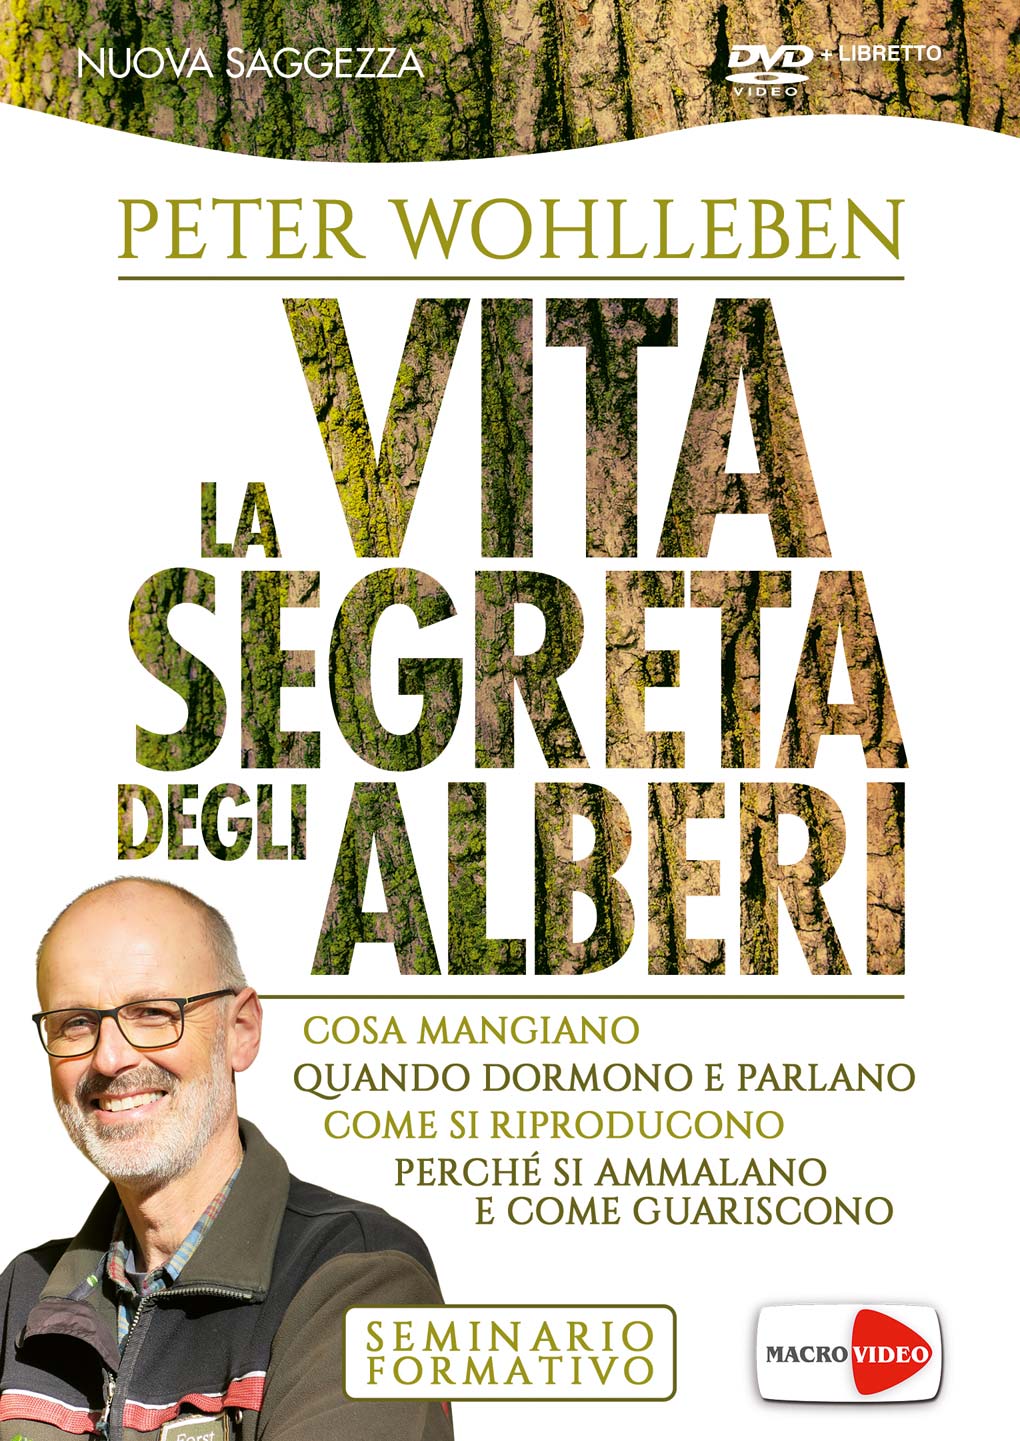 Dvd Peter Wohlleben - La Vita Segreta Degli Alberi (Dvd+Libretto) NUOVO SIGILLATO, EDIZIONE DEL 07/04/2017 SUBITO DISPONIBILE